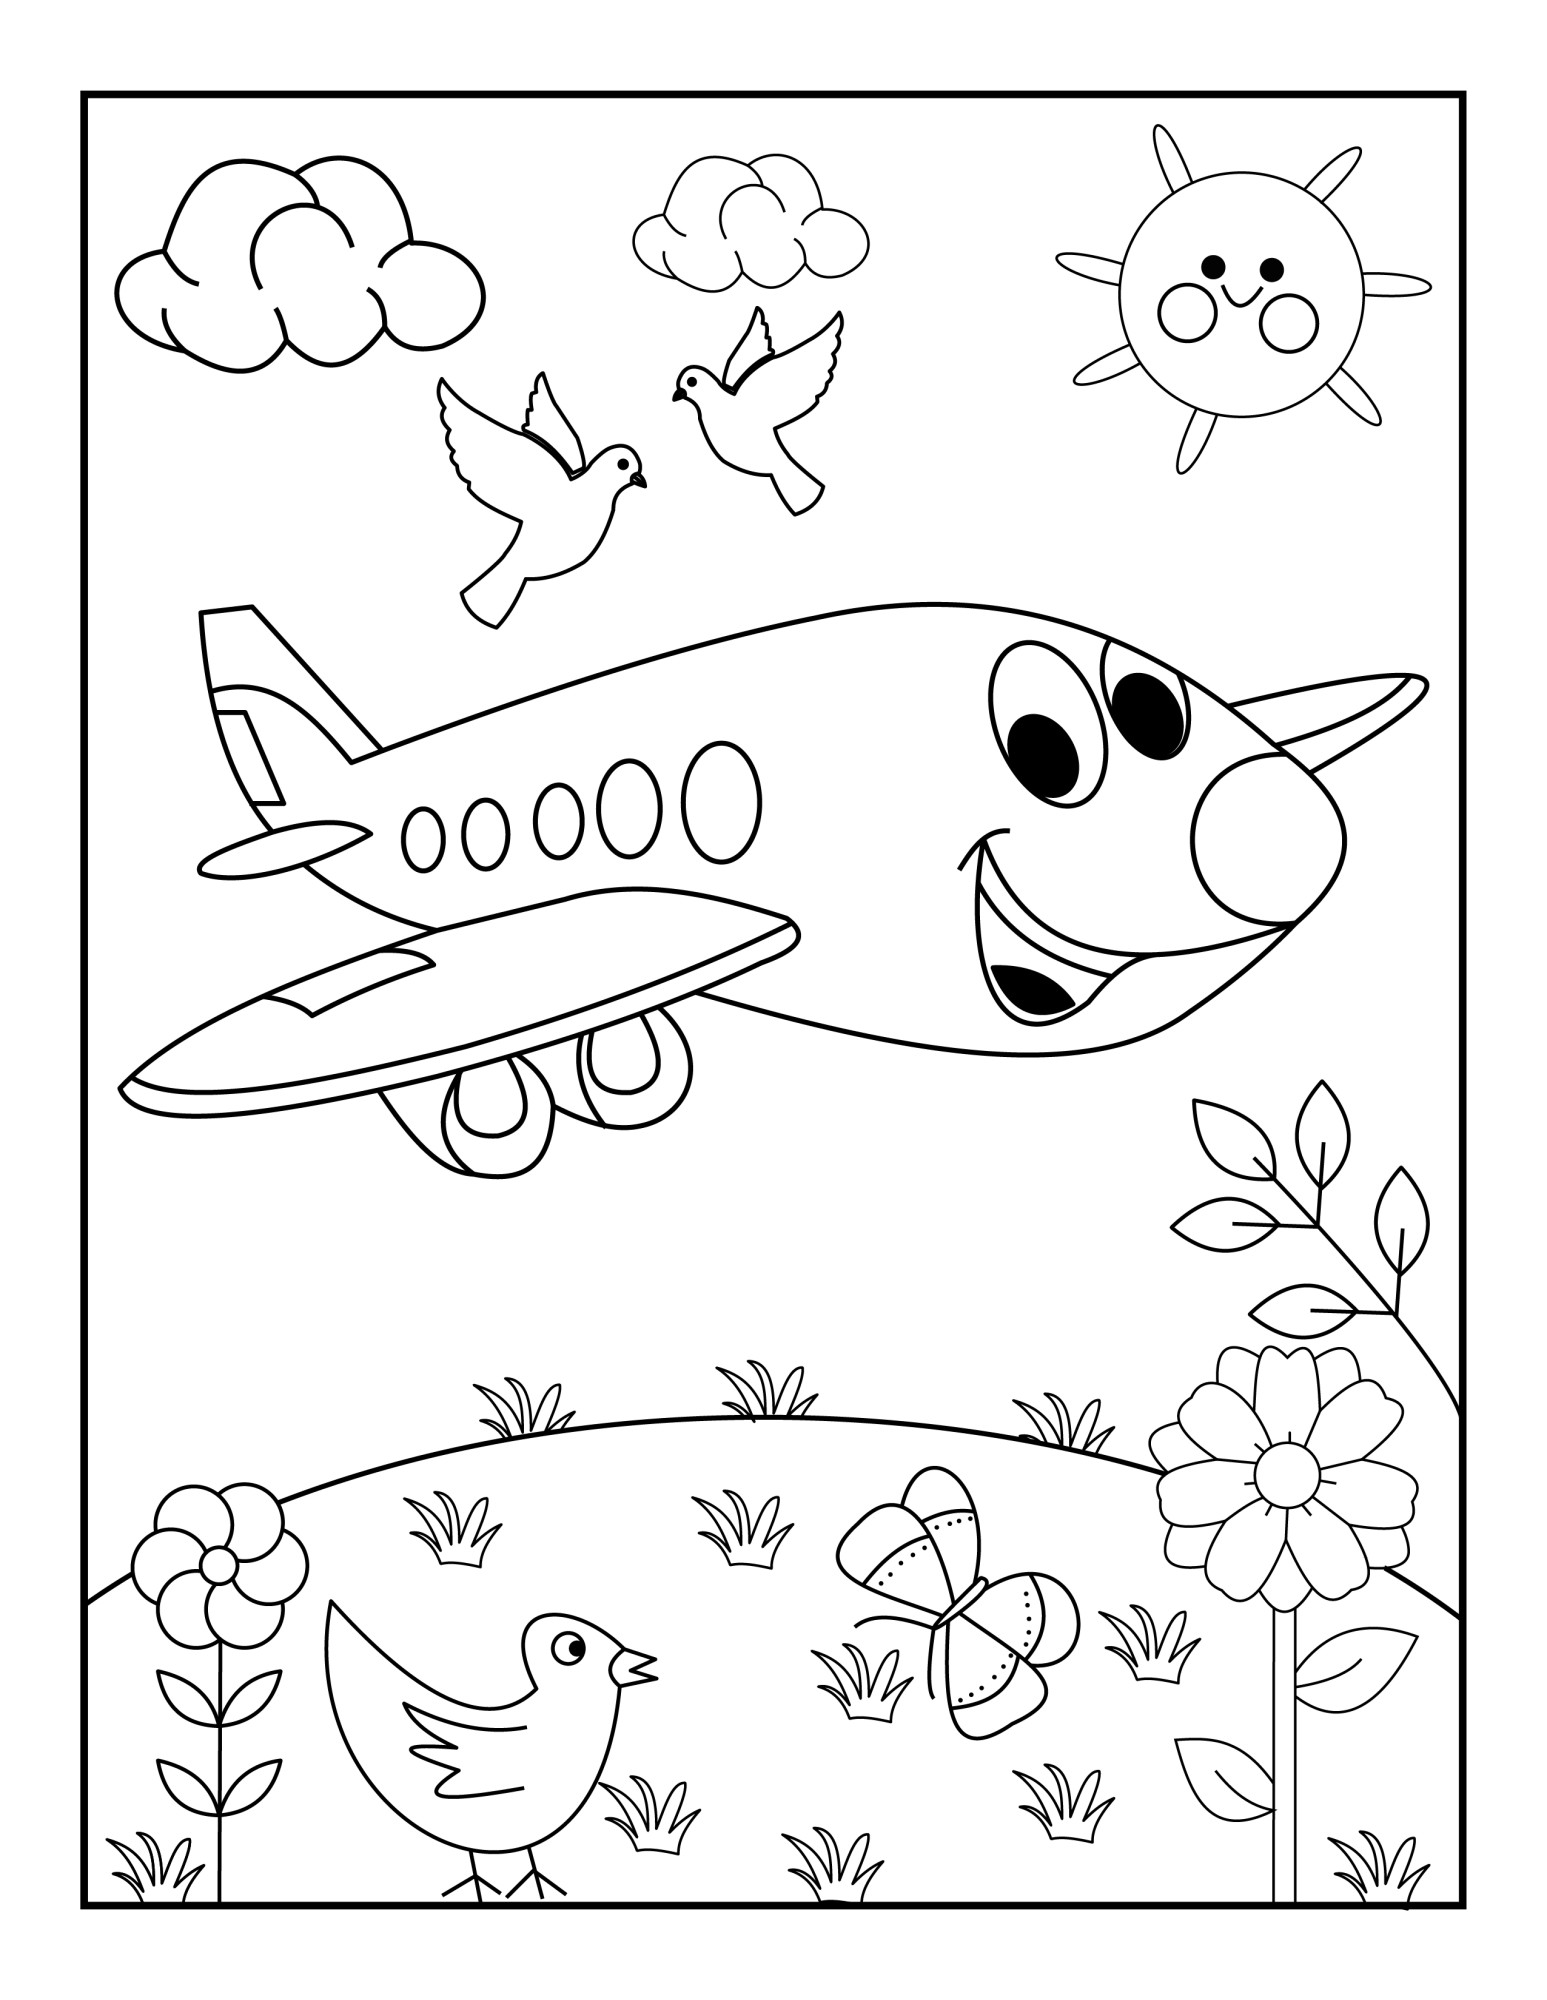 Раскраска для детей: игрушечный самолет с лицом